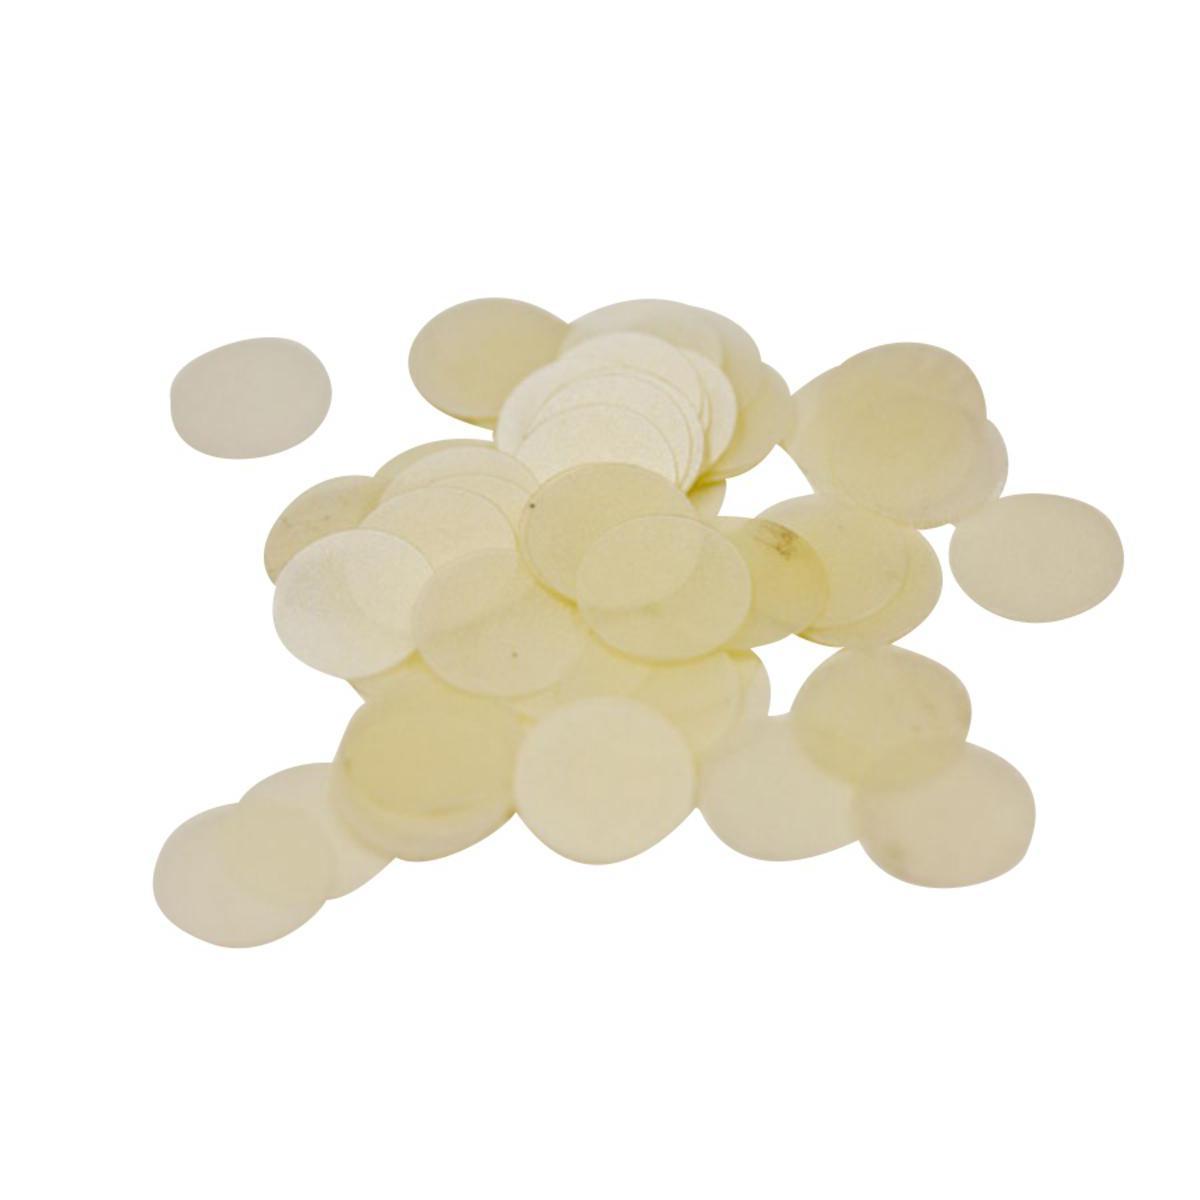 Confettis de table grande pastille - Plastique - 10 gr. - Blanc ivoire